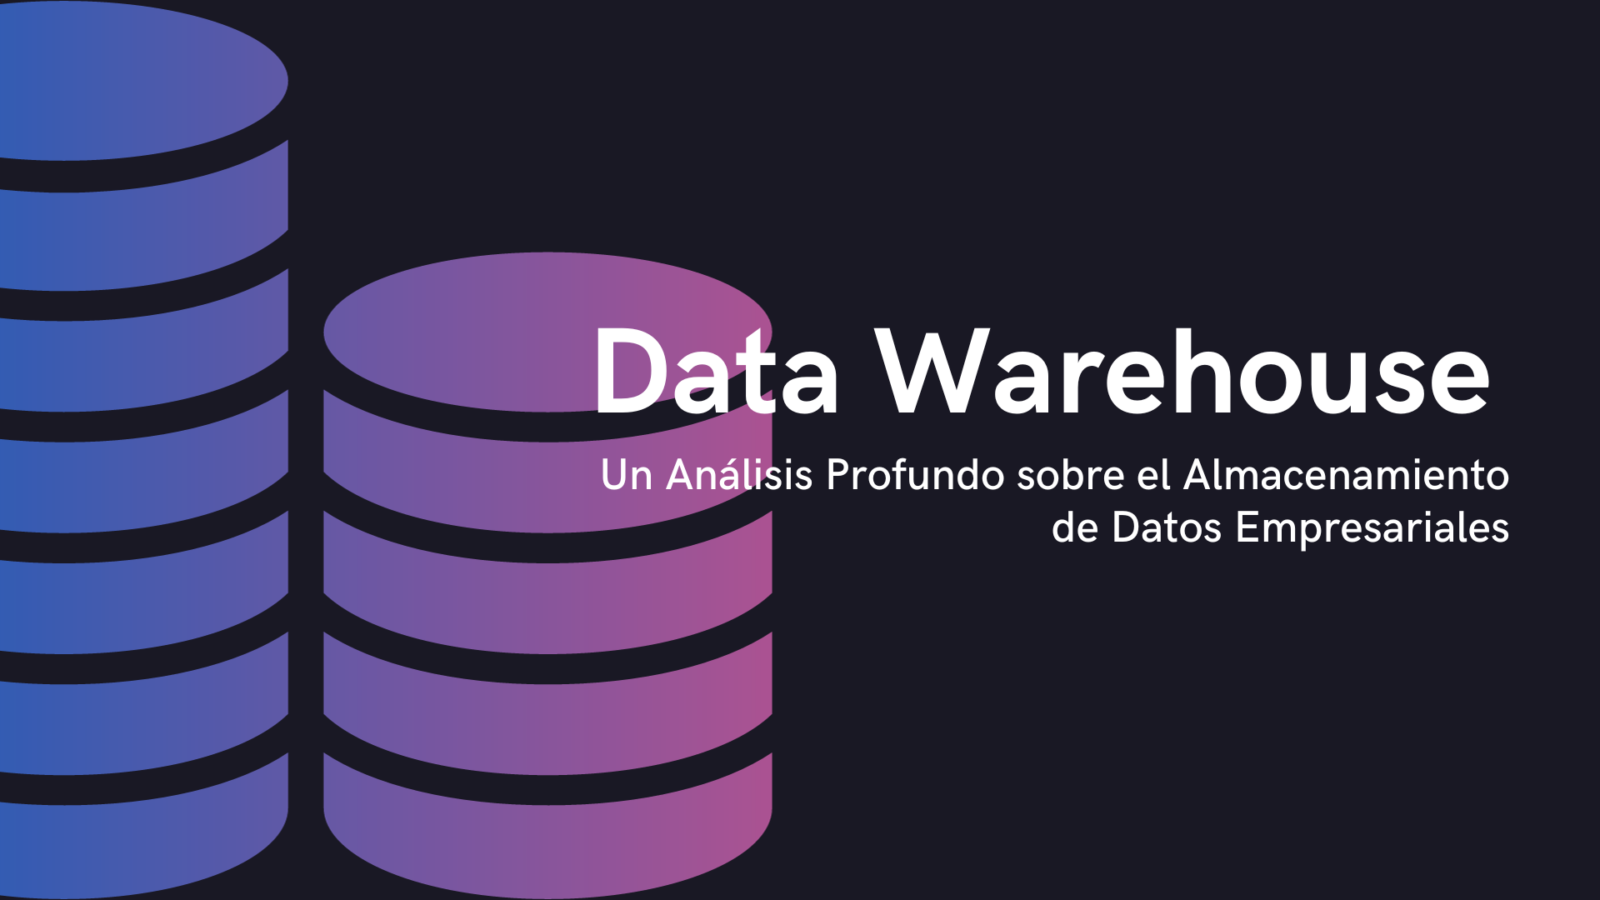 Data Warehouse: Un Análisis Profundo sobre el Almacenamiento de Datos Empresariales